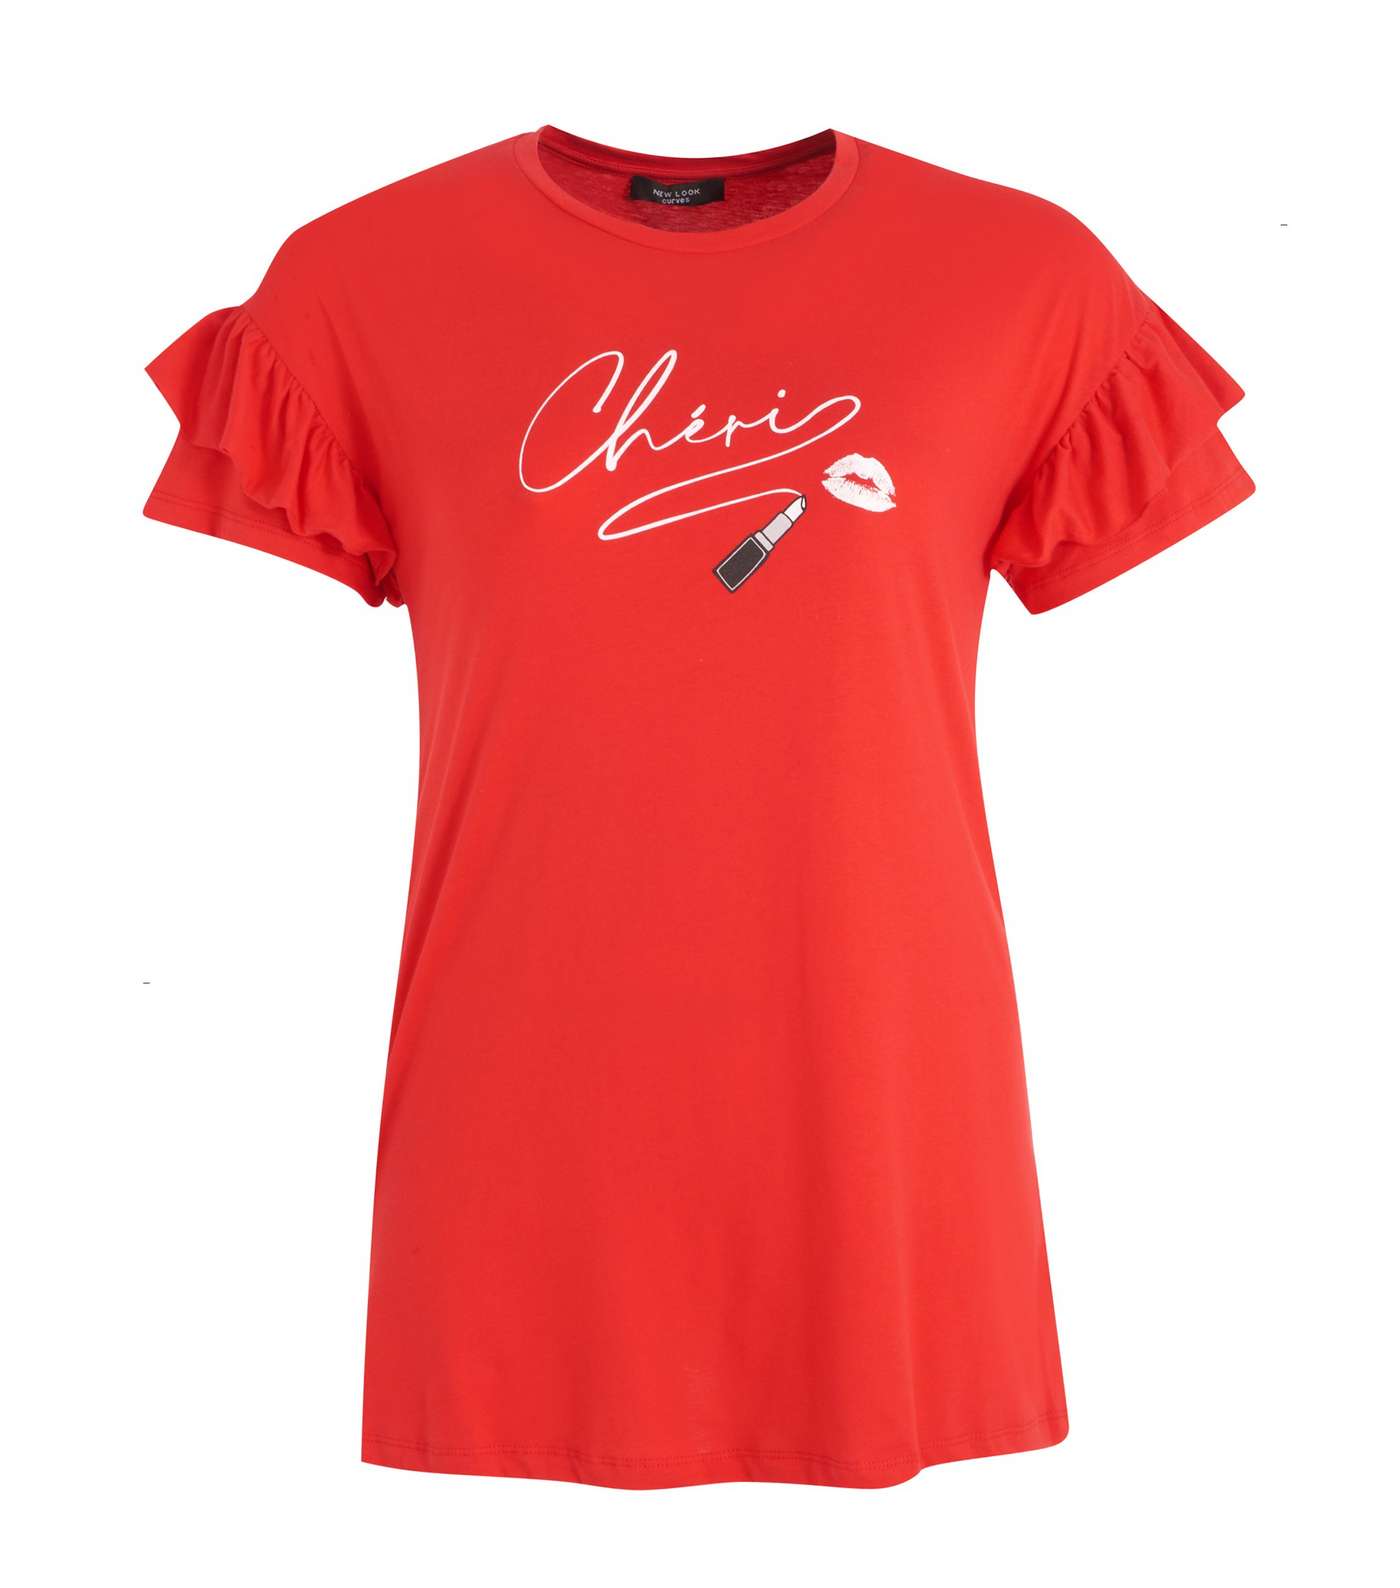 Curves Red Chéri Lipstick Slogan T-Shirt